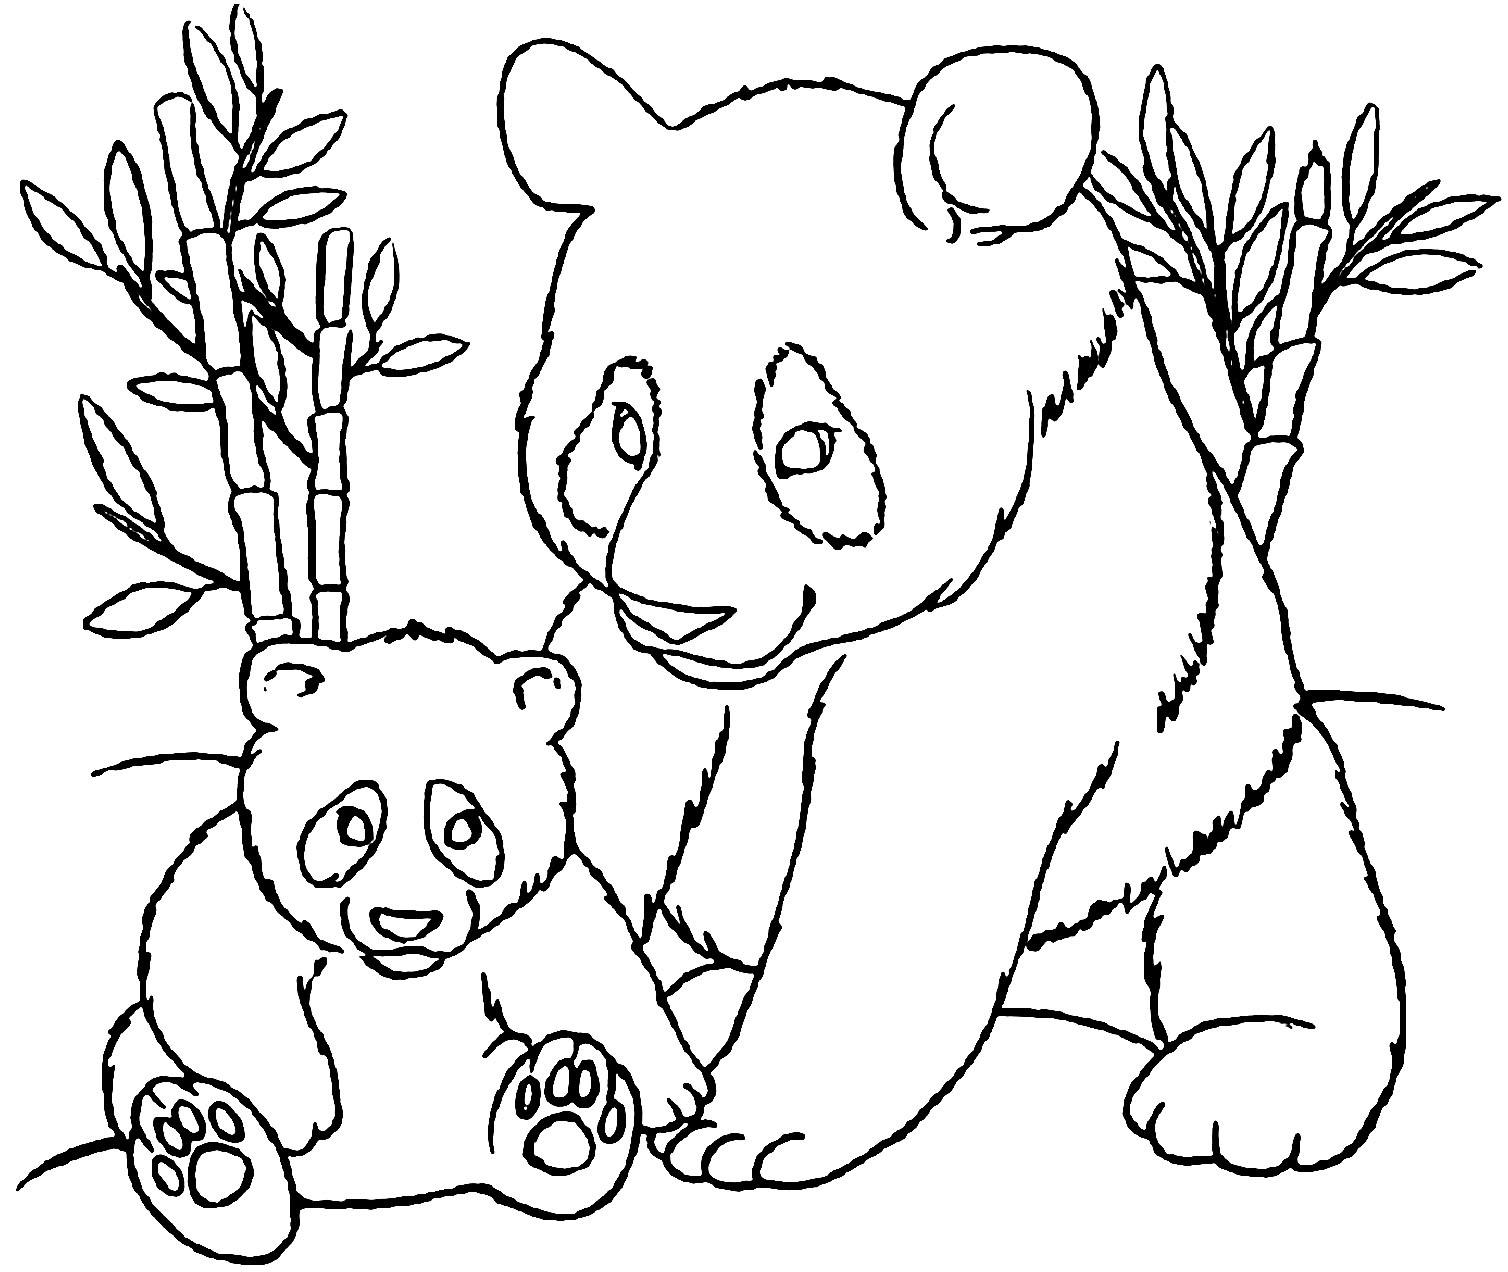 Desenhos para colorir de desenho de um panda para colorir -pt